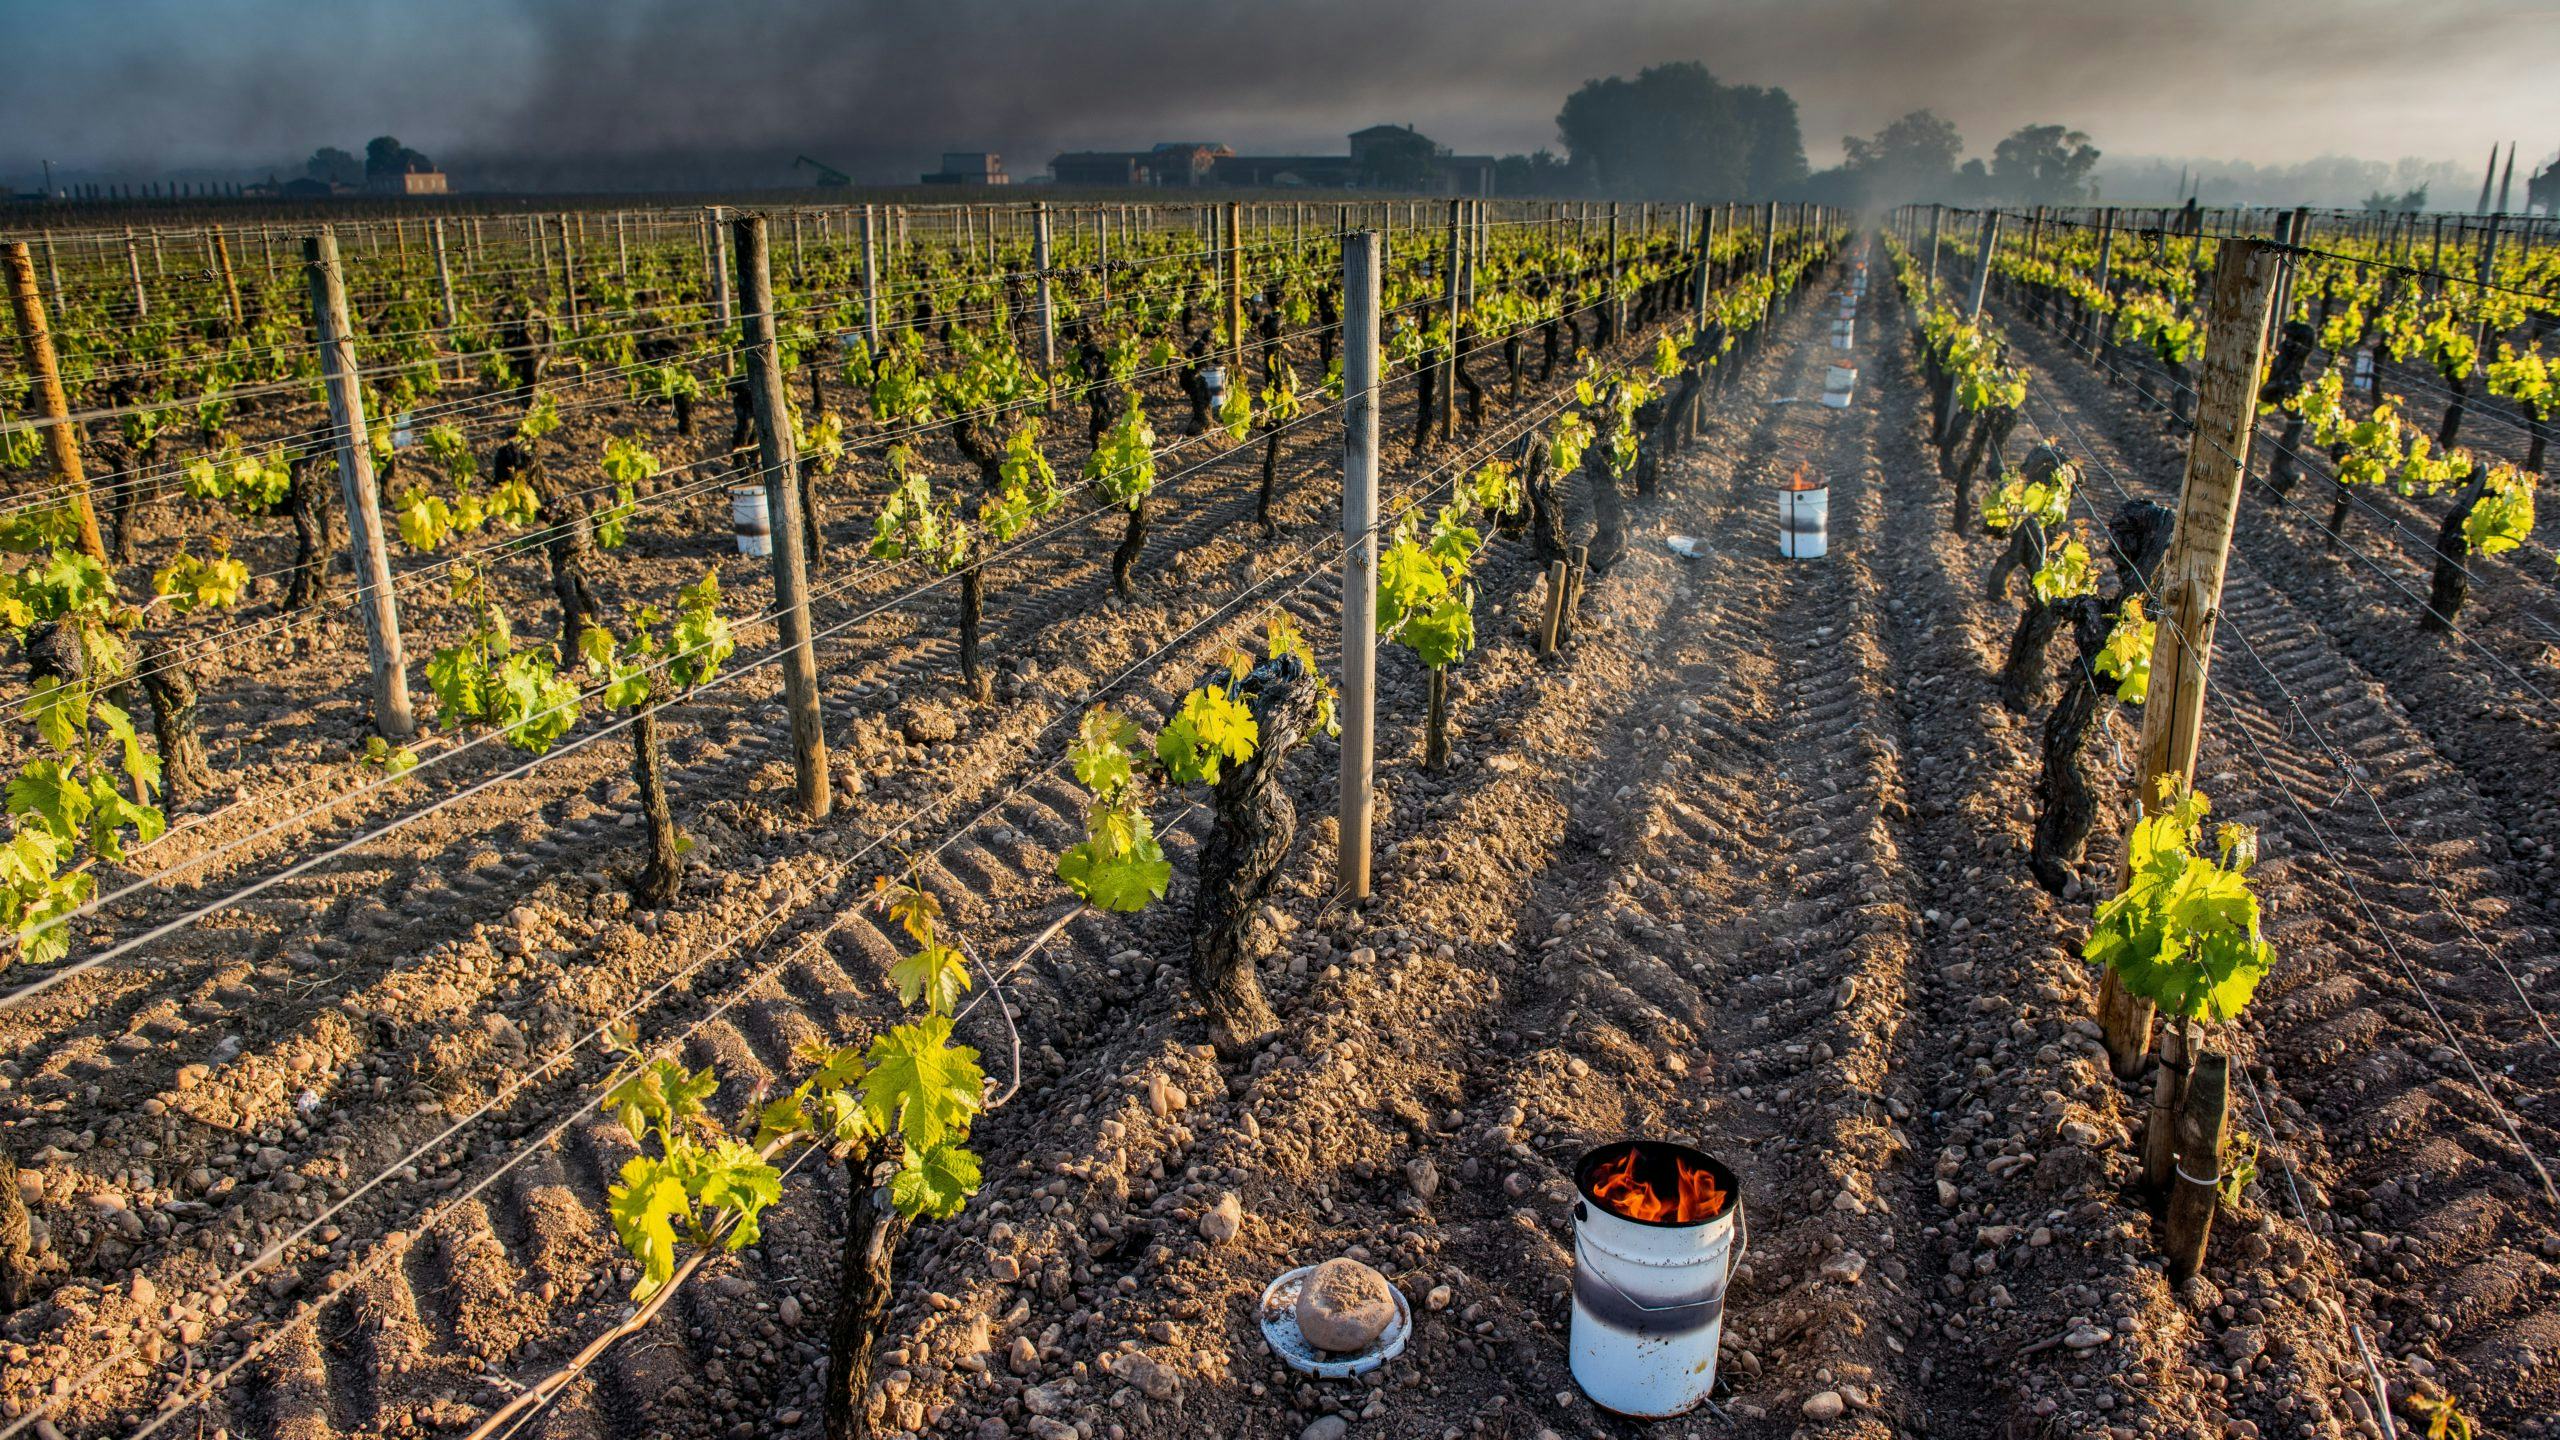 Wijnboeren in door vorst getroffen Franse wijngebieden proberen met vuren de temperatuur tussen de wijnranken boven 0 te houden.